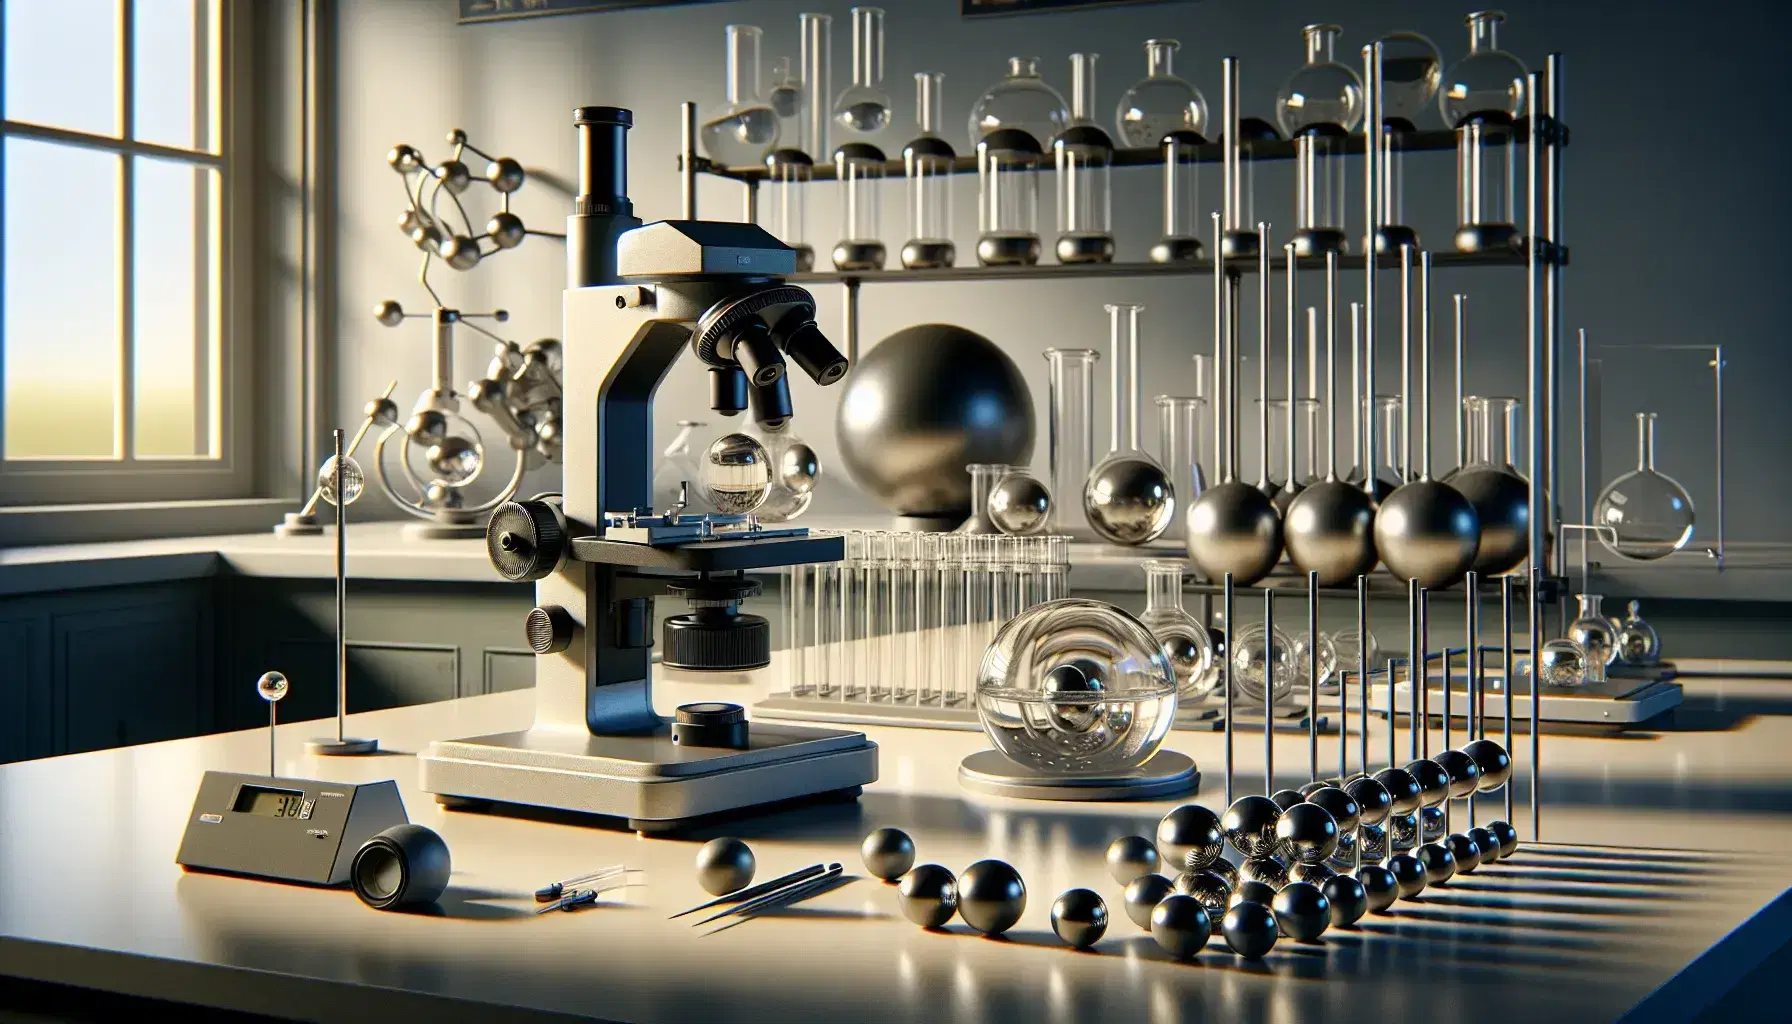 Laboratorio de física con microscopio metálico, esferas en soportes y estante con frascos de vidrio, balanza analítica y tubo de ensayo.